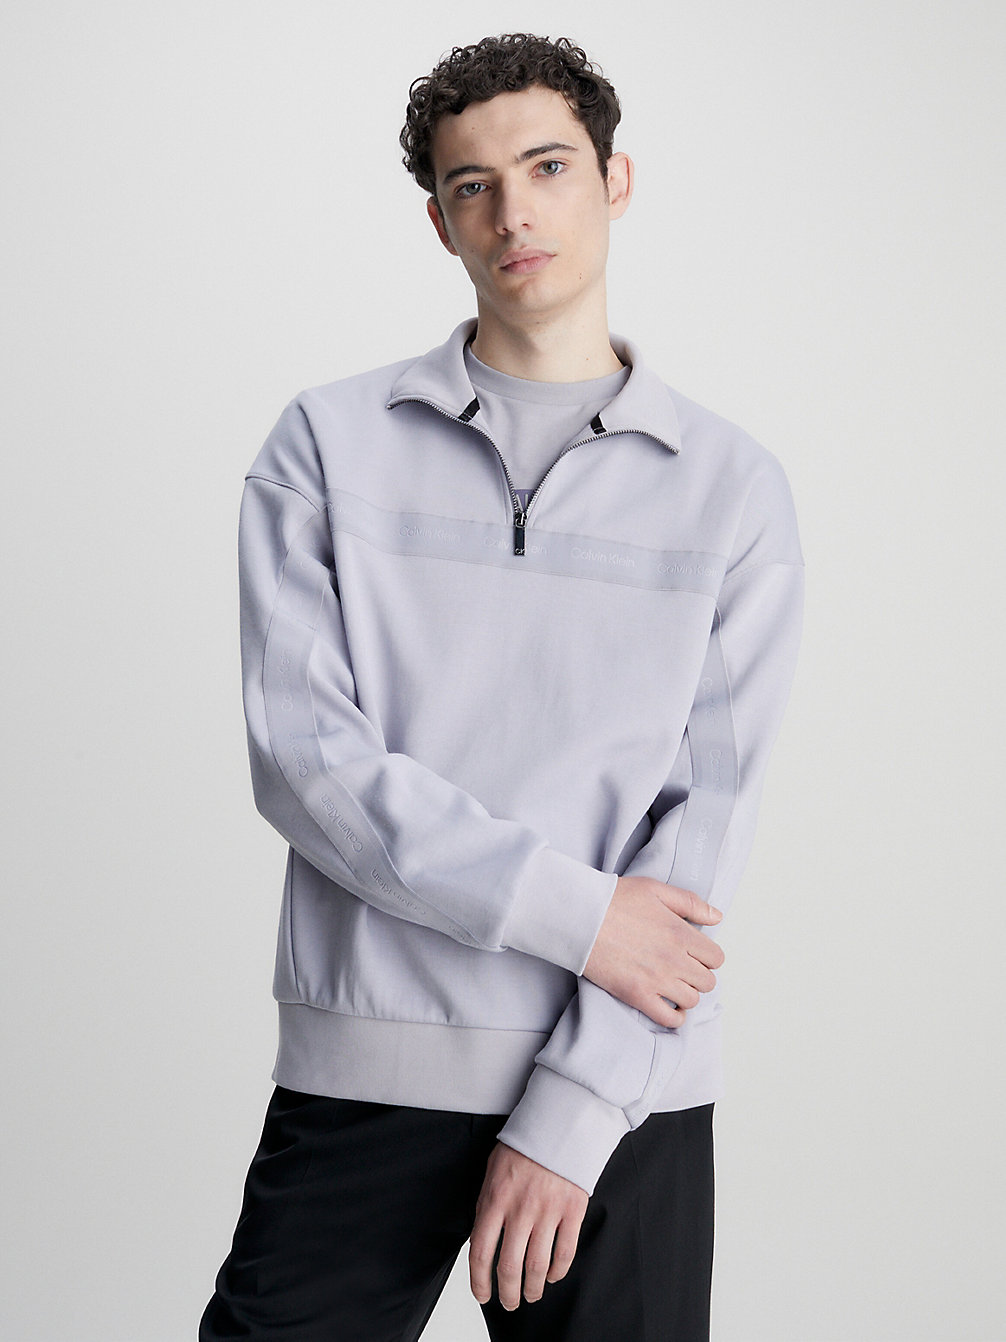 DAPPLE GRAY > Sweatshirt Mit Reißverschluss Am Kragen > undefined men - Calvin Klein